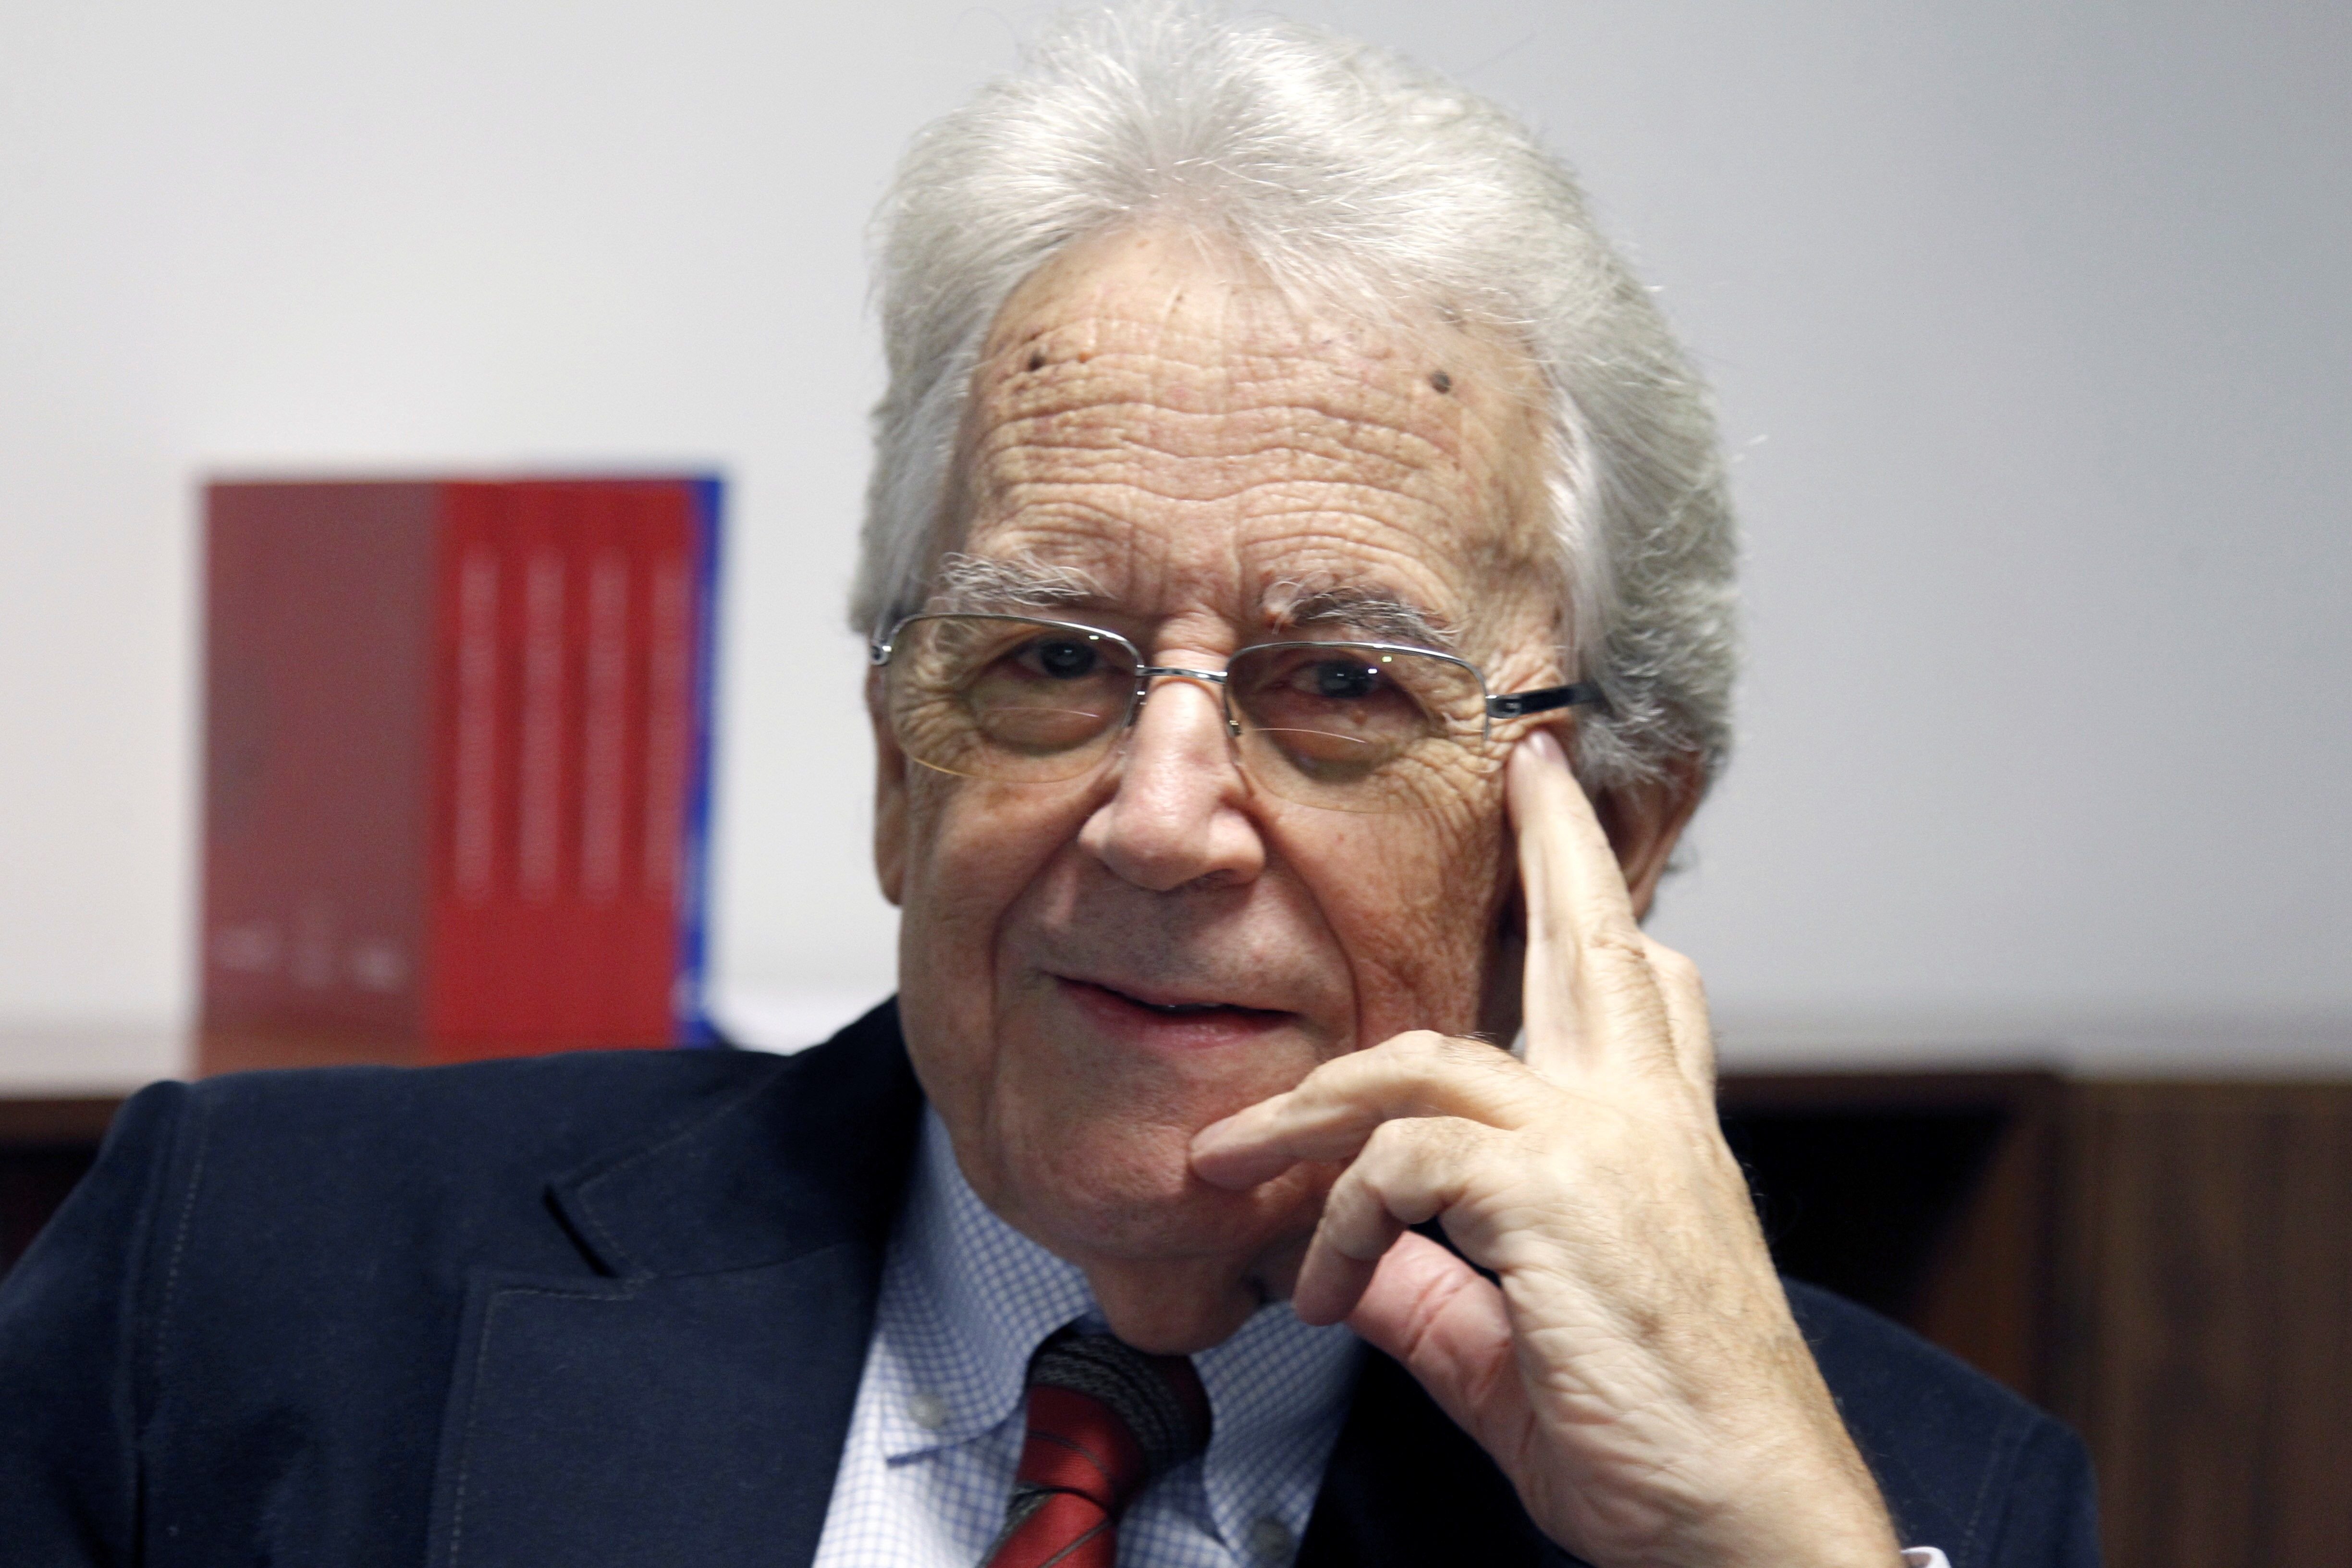 Mor als 79 anys l'historiador Santos Juliá a Madrid